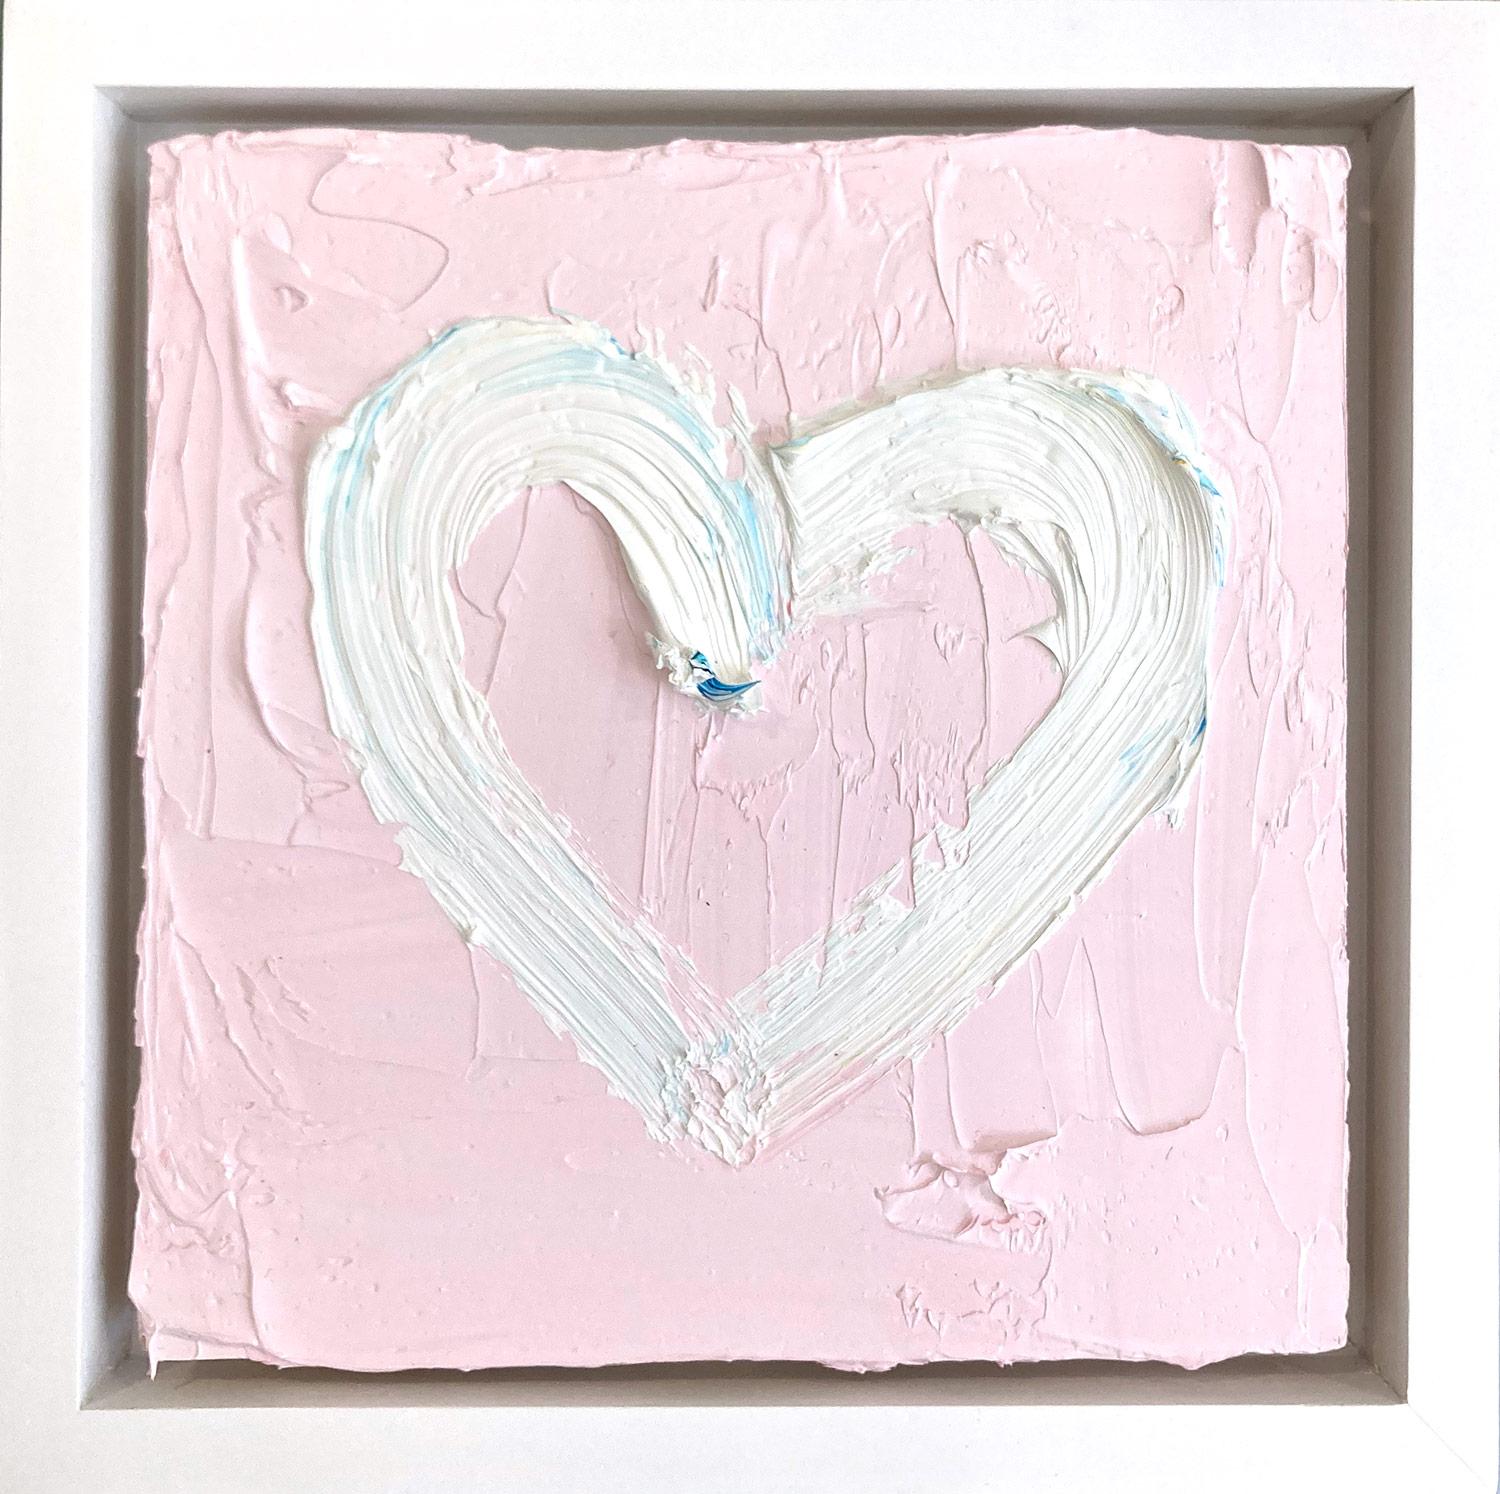 Abstract Painting Cindy Shaoul - « My Sweet Heart », peinture à l'huile pop art blanche et rose avec cadre flottant blanc